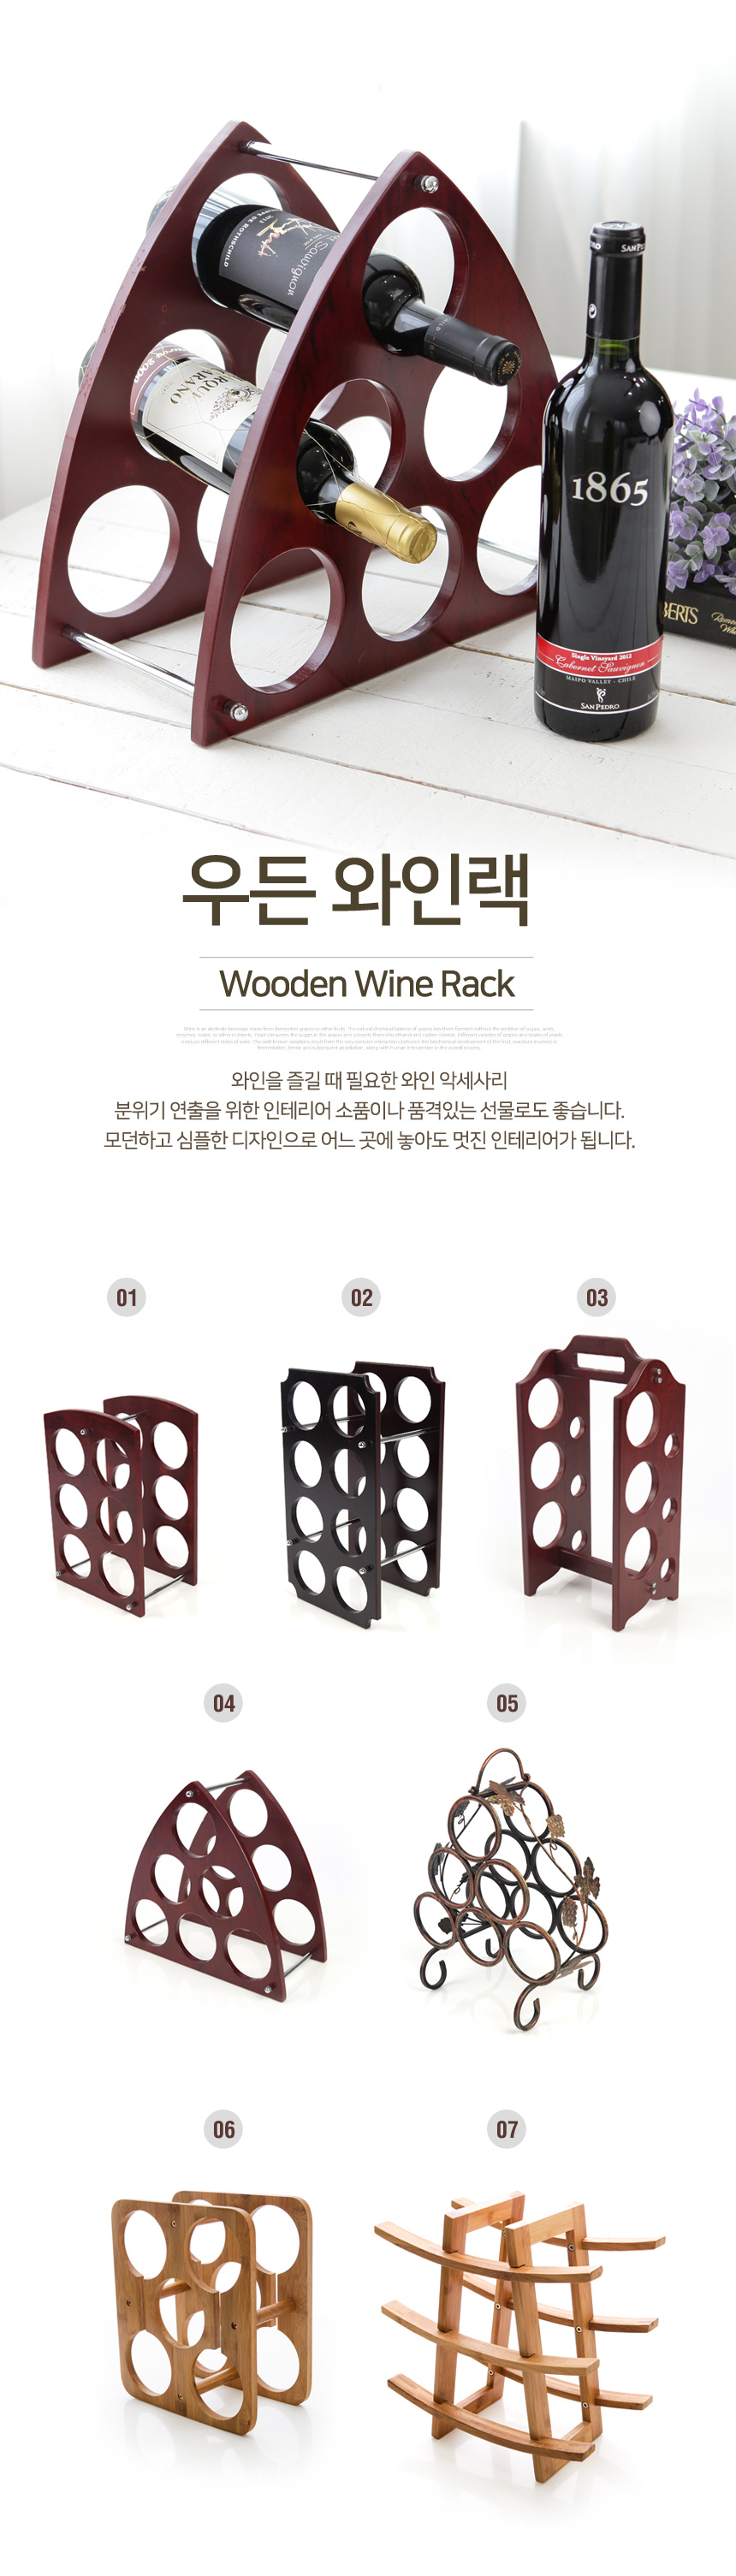 winerack_wood_01.jpg